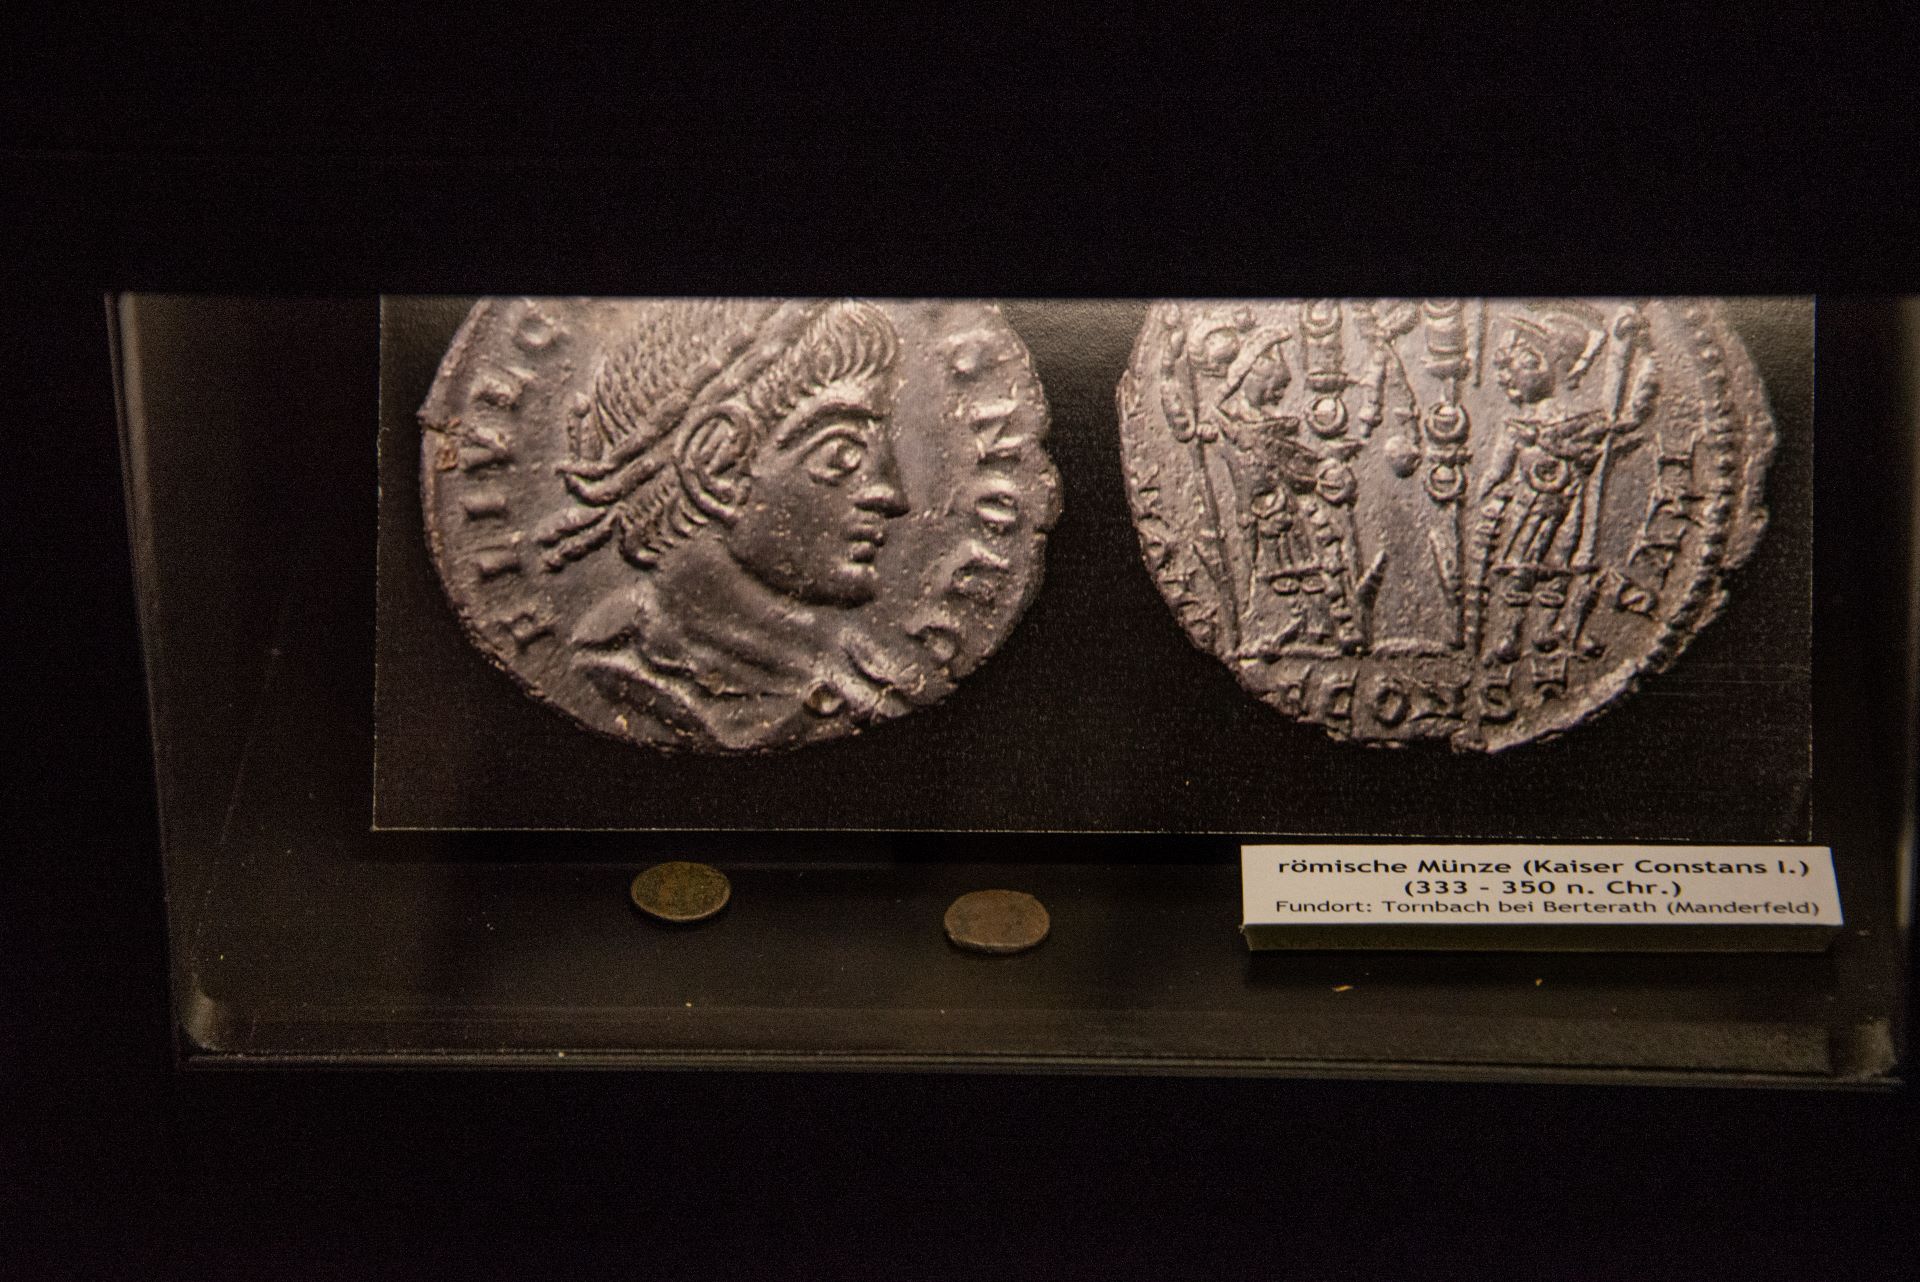 Deux anciennes pièces romaines exposées dans un musée sont mises au point sur un fond sombre.